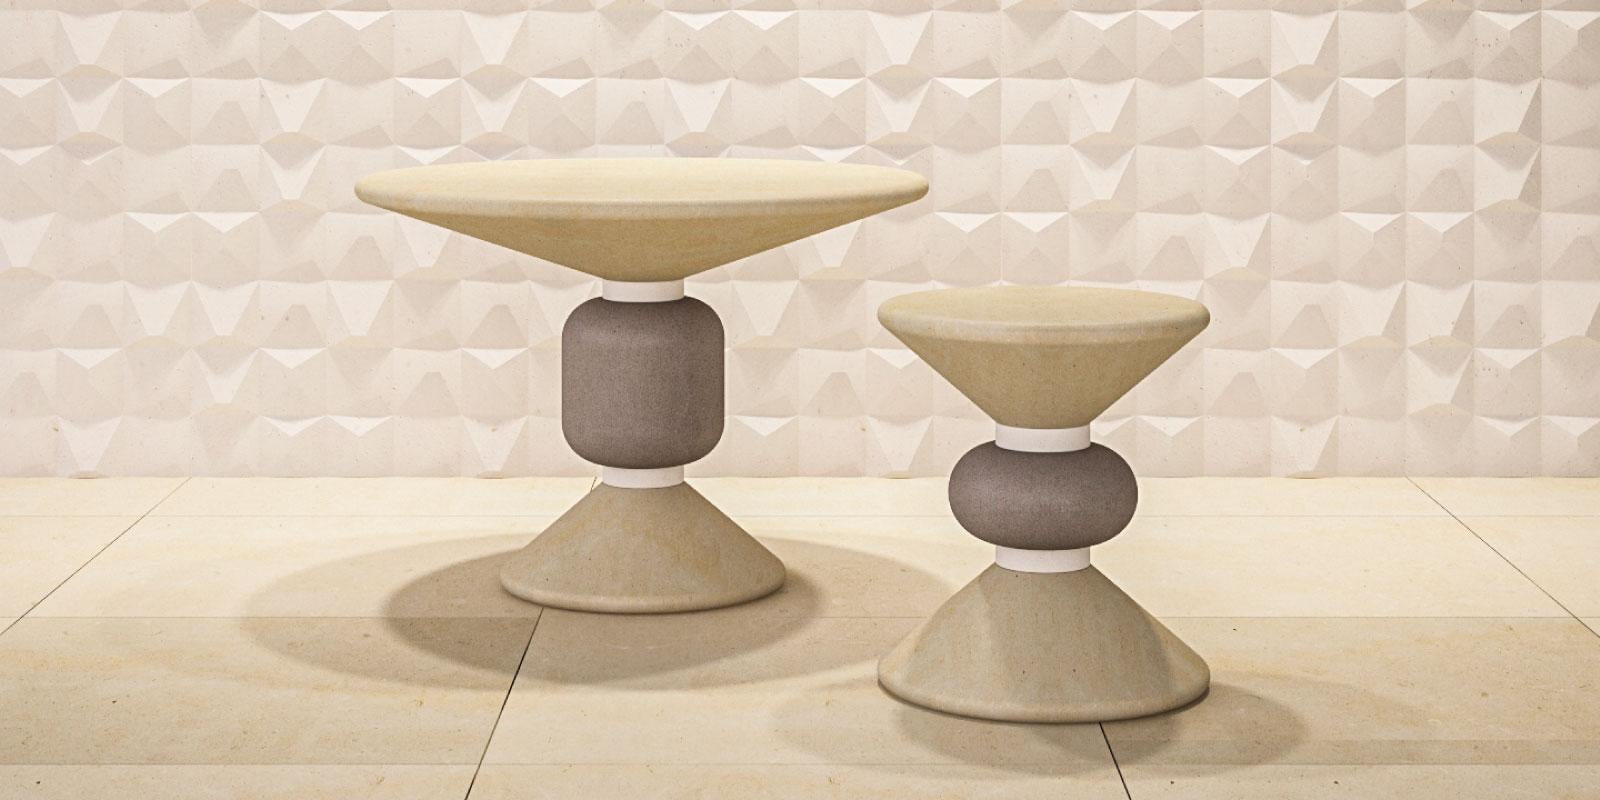 Ein Paar skulpturale Tische in Beige und Grau aus Kalkstein.
Sowohl für Innen- als auch für Außenbereiche geeignet.
Groß: ø 27,5